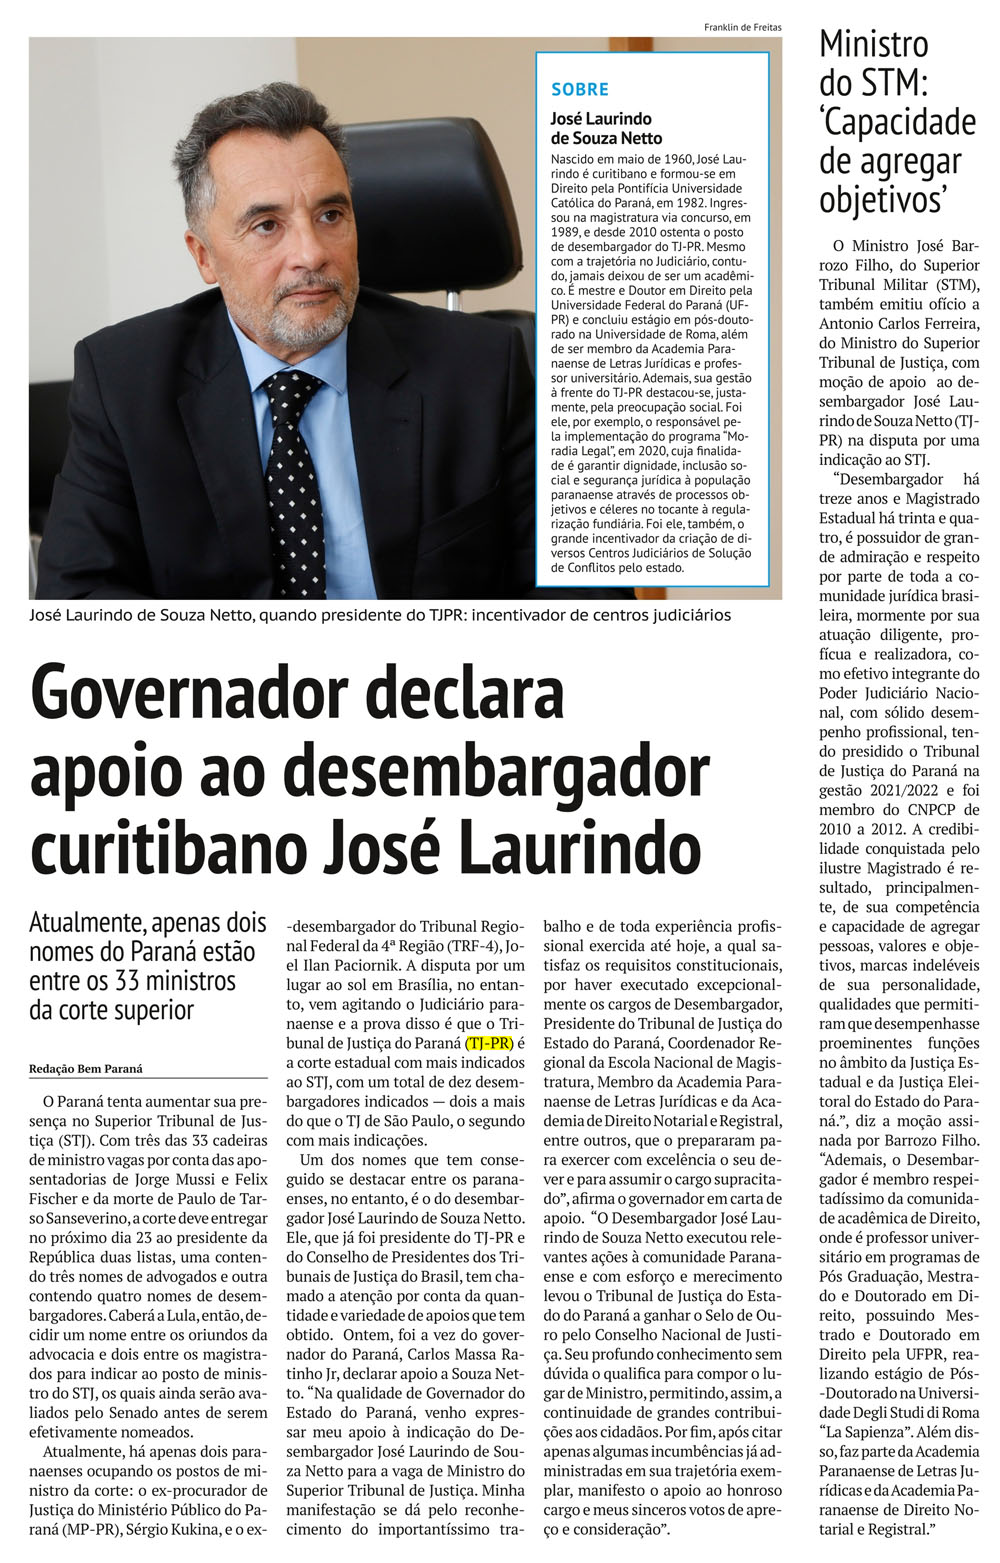 Governador declara apoio ao desembargador curitibano José Laurindo